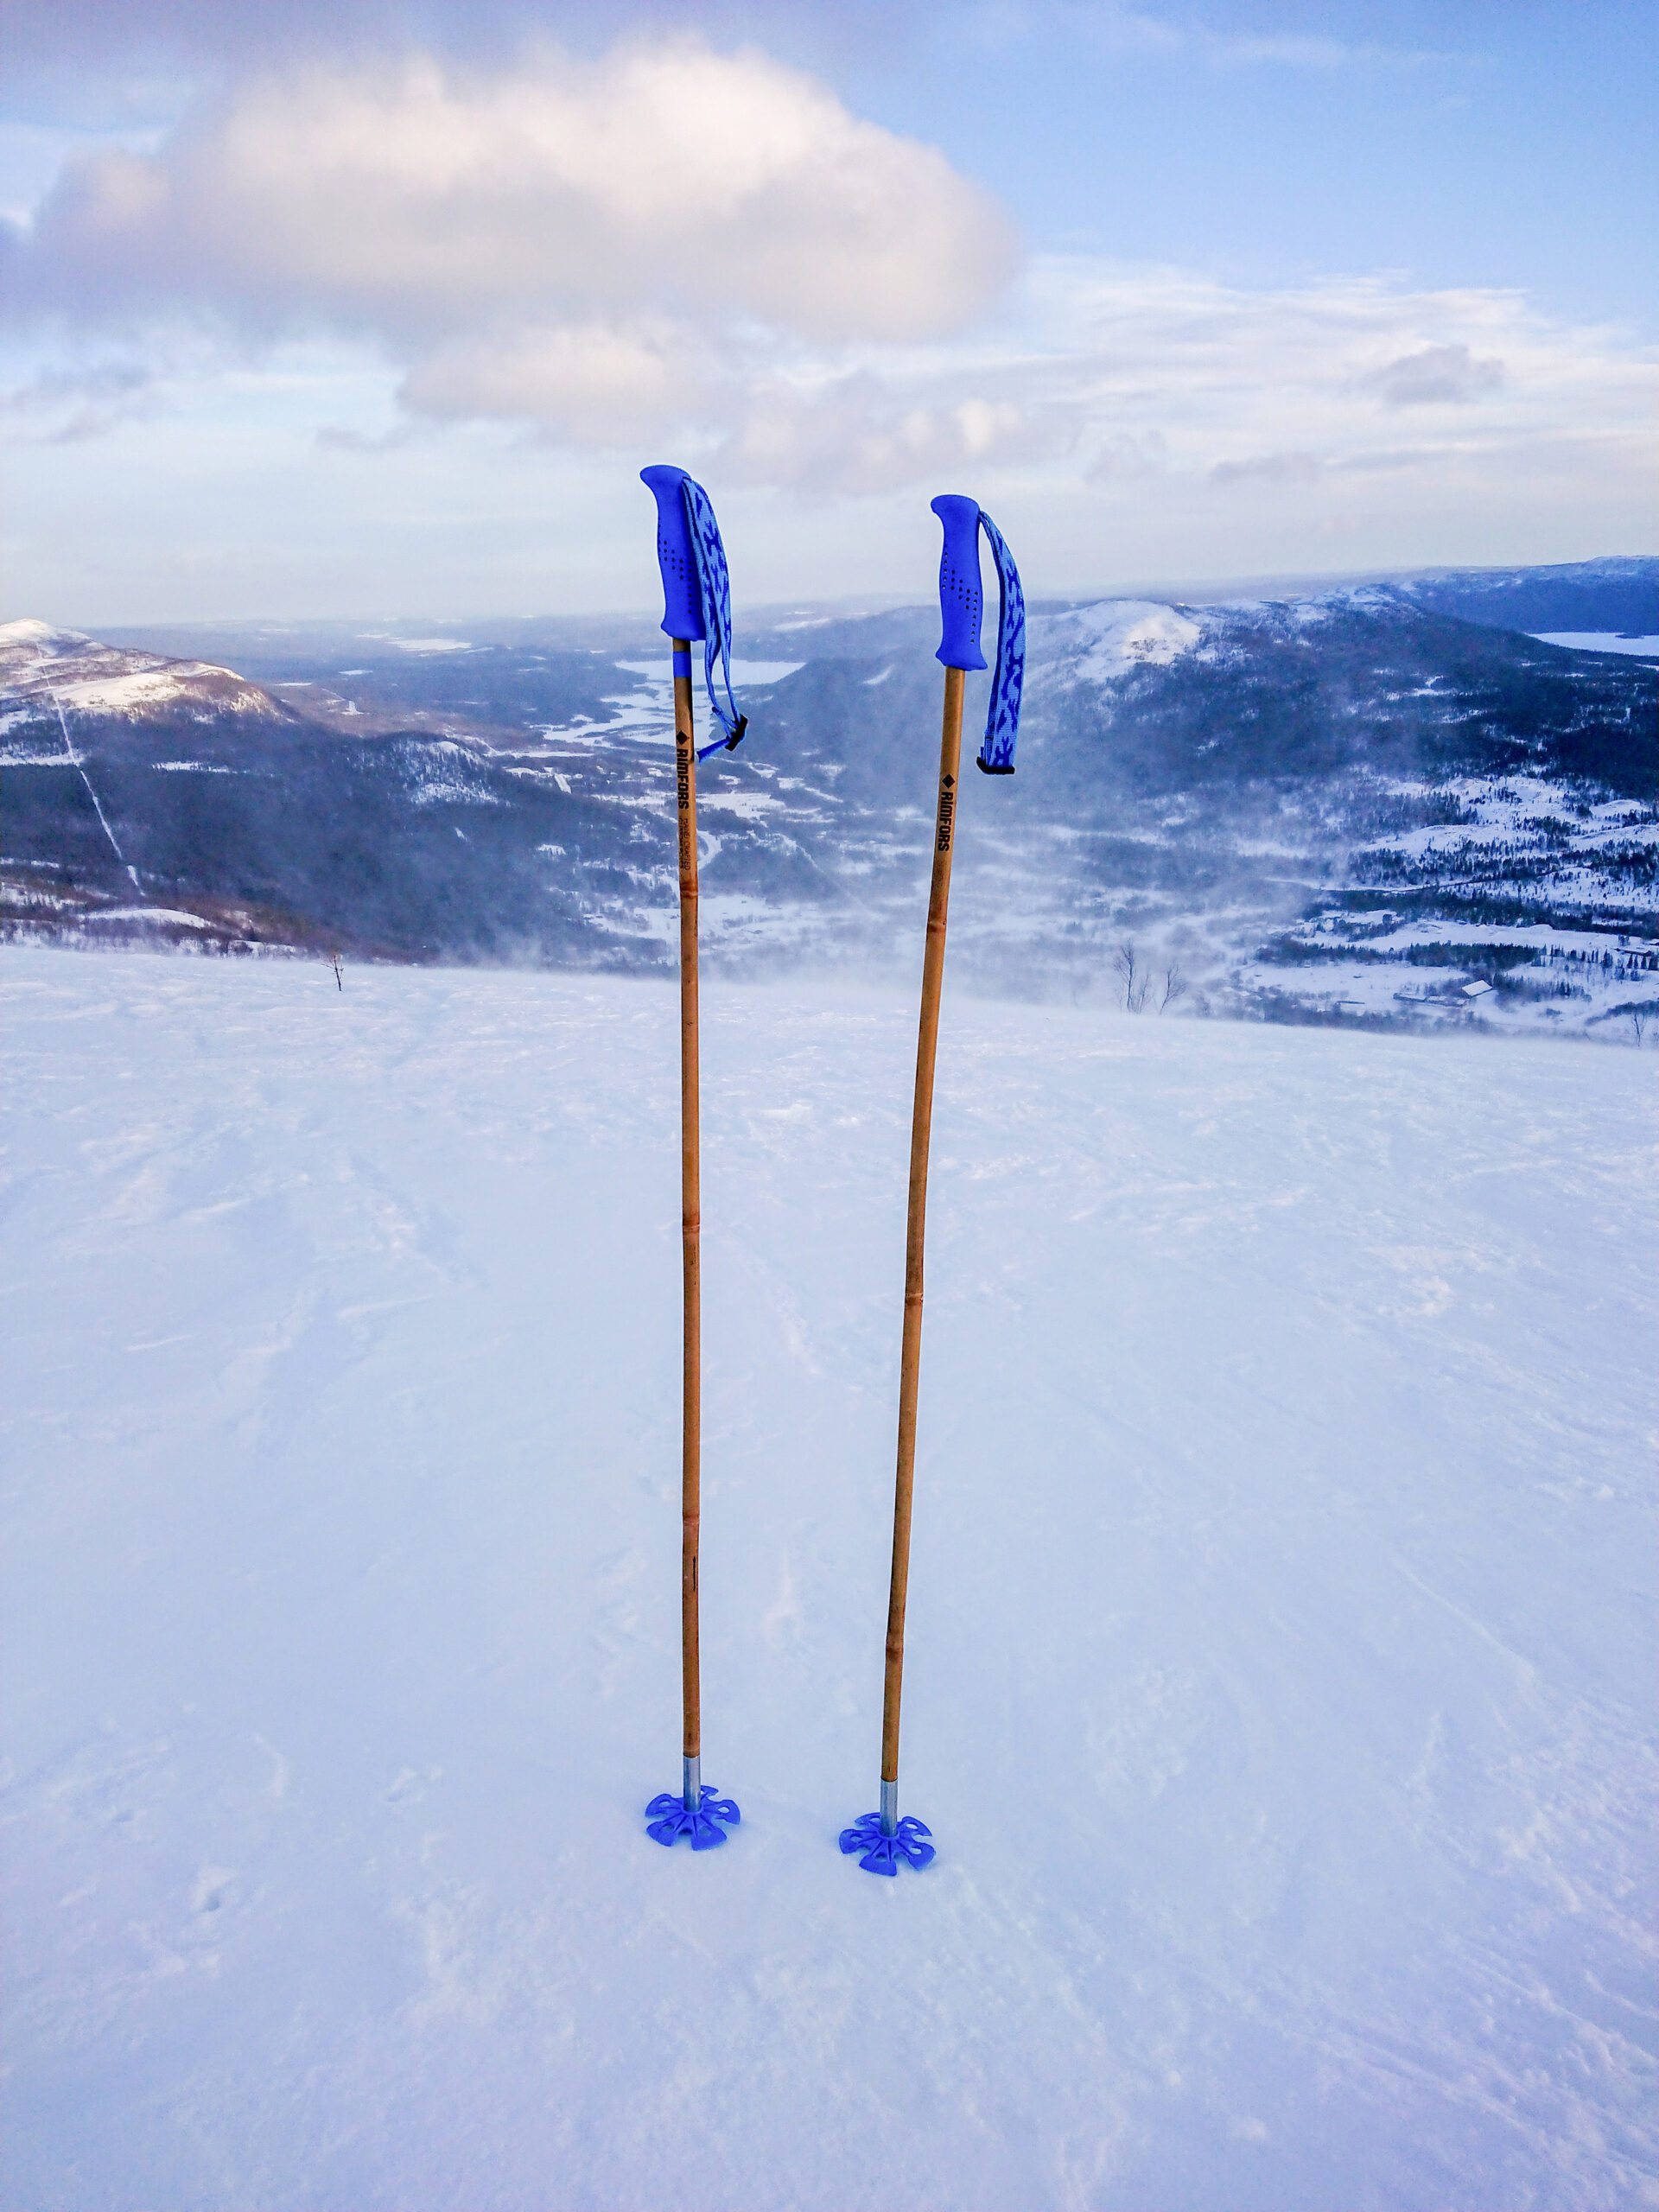 Rimfors bamboo ski poles, prototype tested in Kittelfjäll February 2020.